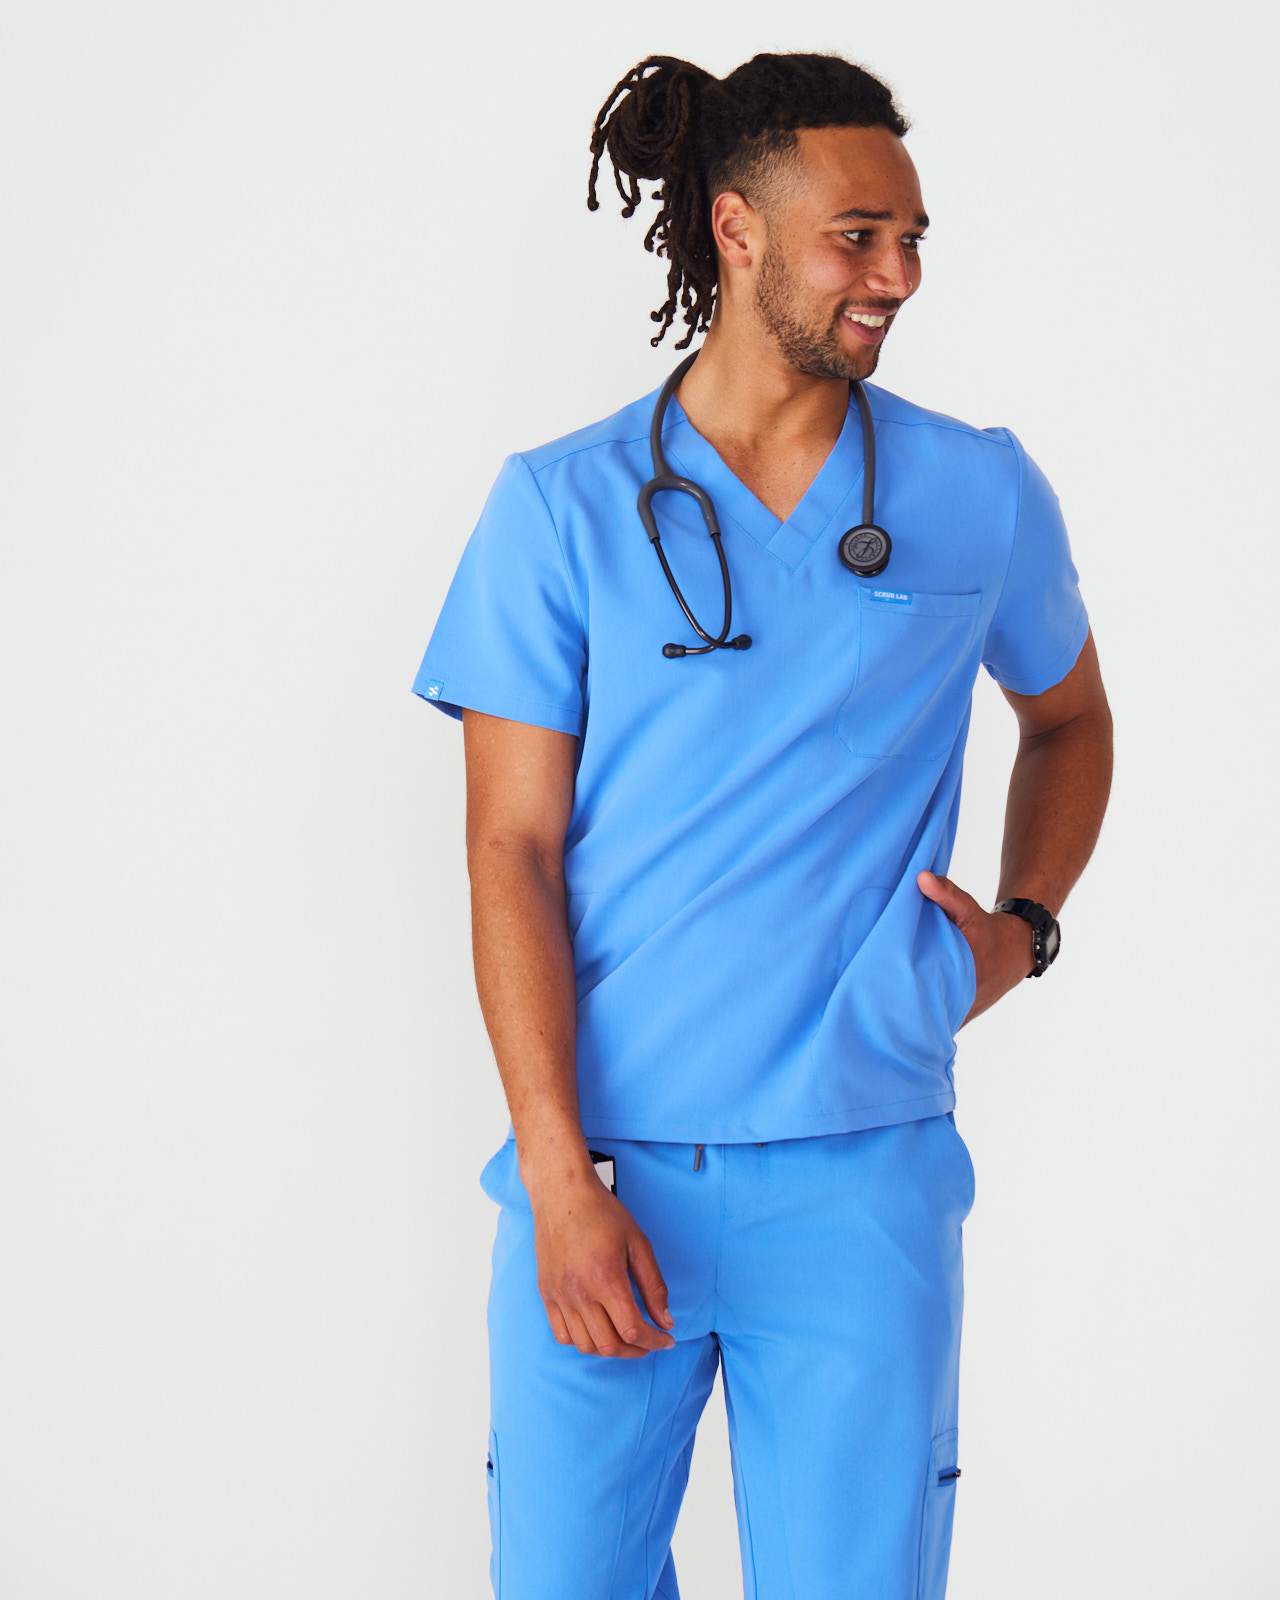 Nursing Scrubs for Men and Women – Scrub Lab - Premium Medical Apparel